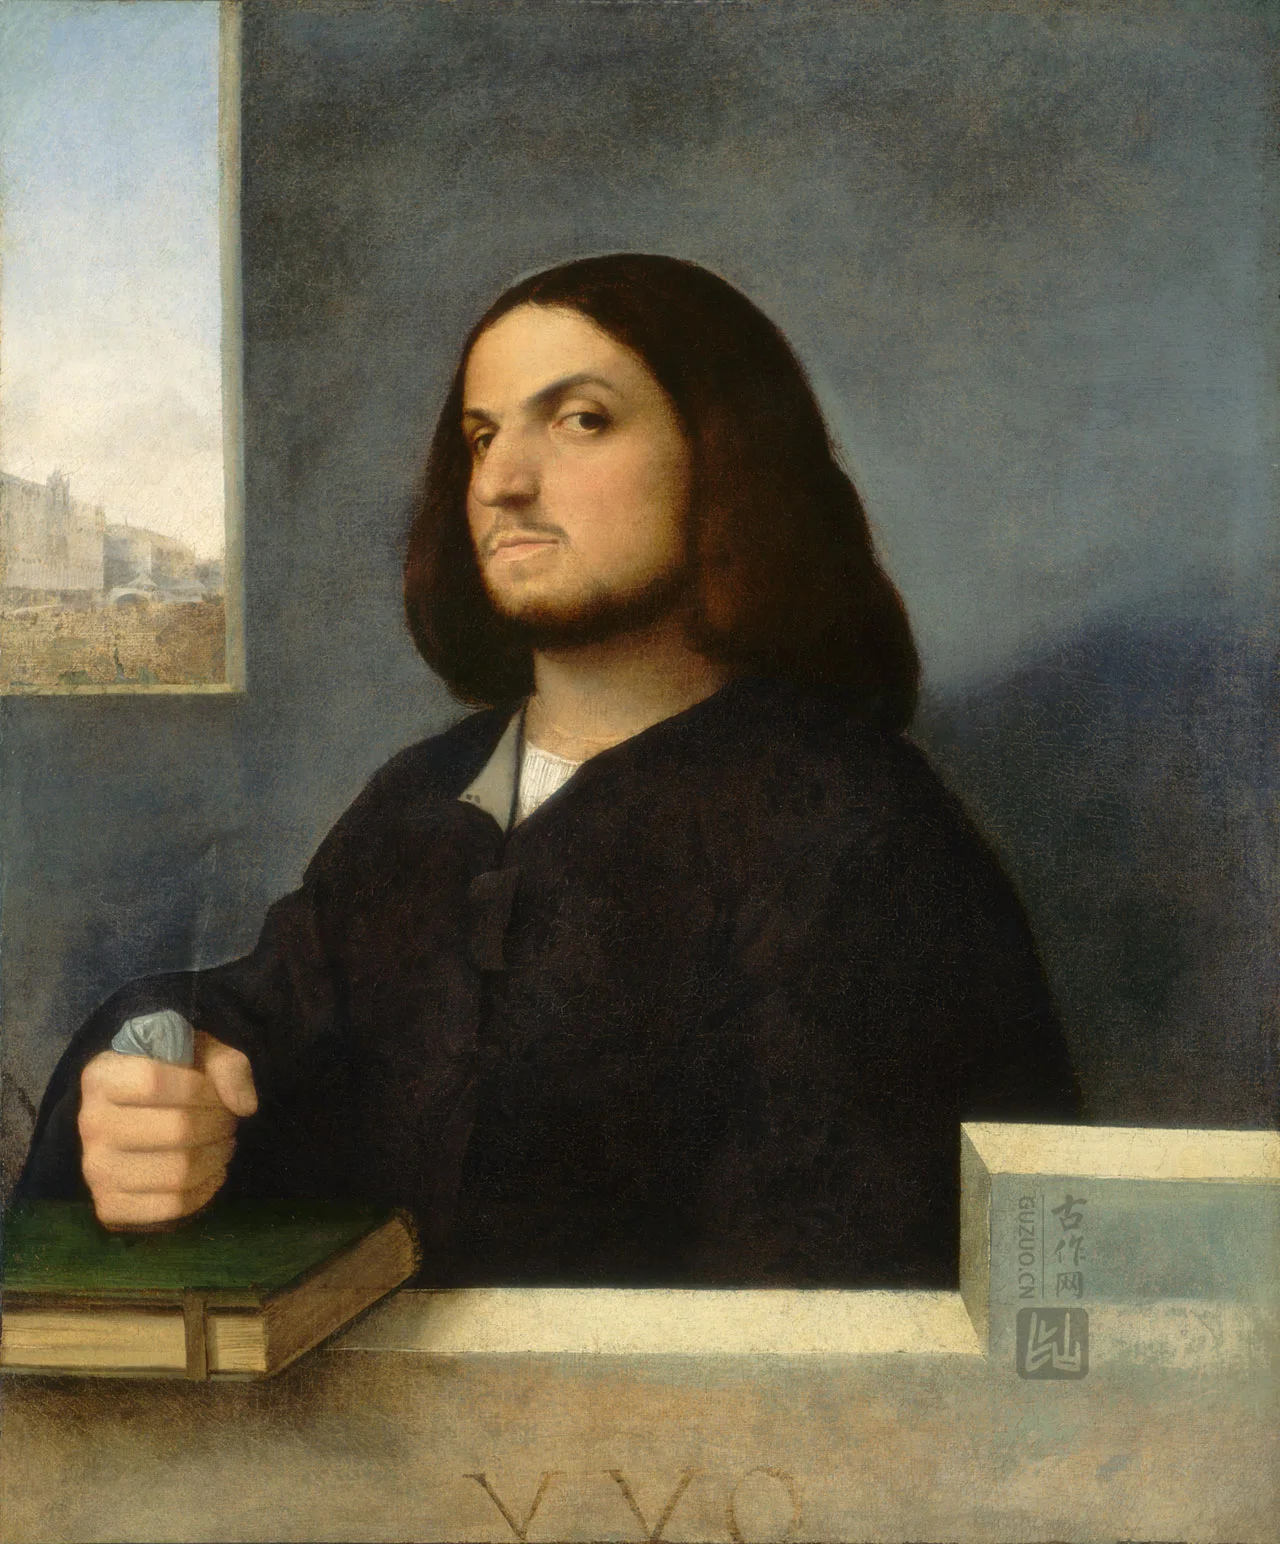 乔尔乔内油画作品《有书的威尼斯绅士肖像》高清大图